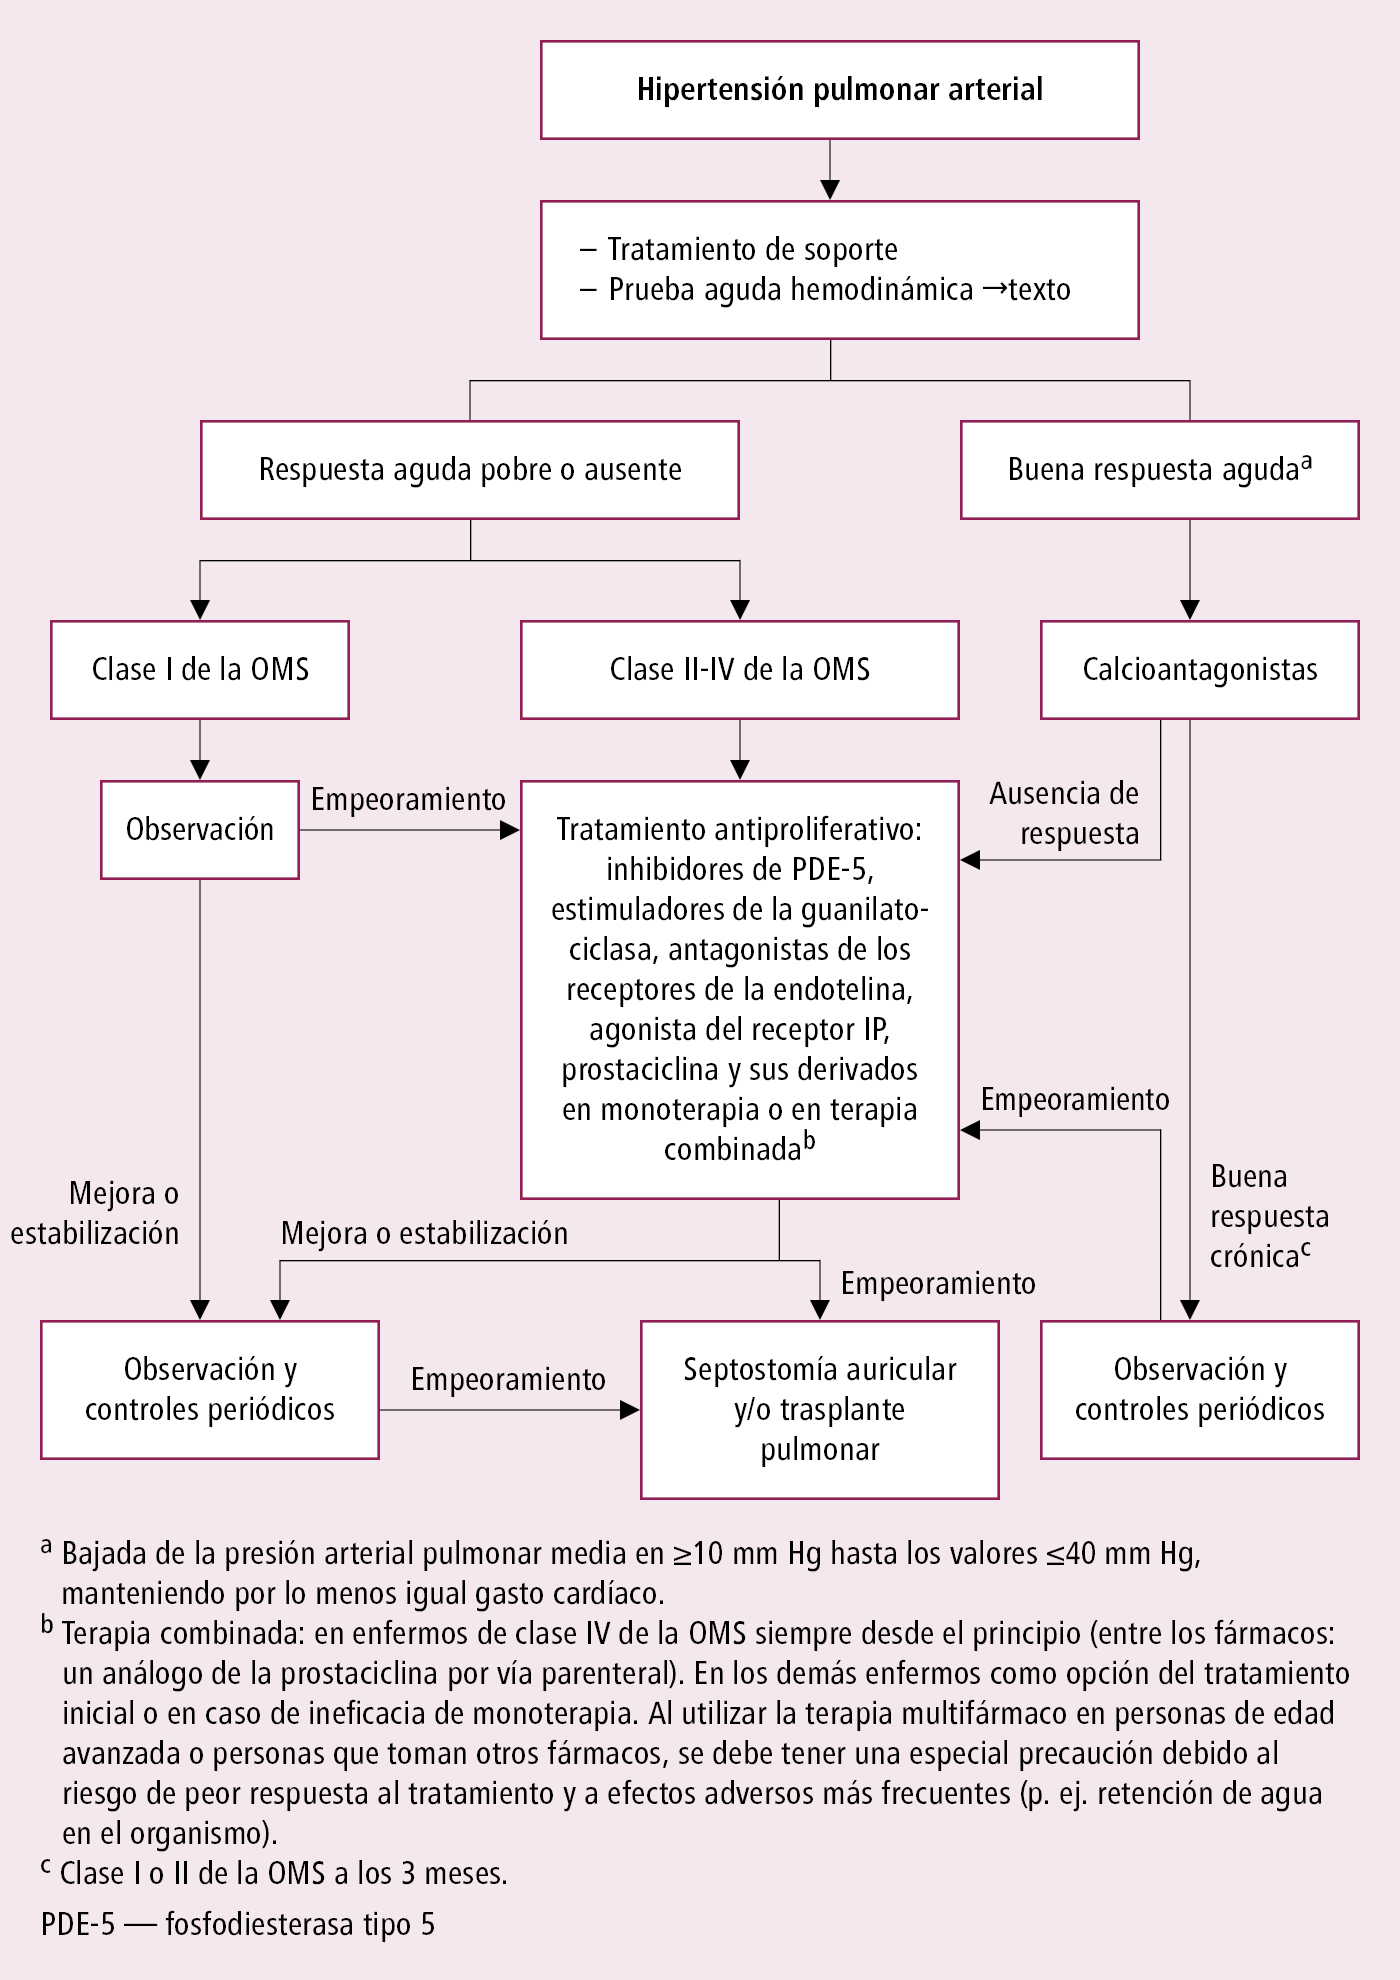    Fig. 2.21-1.  Algoritmo de manejo terapéutico de un enfermo con hipertensión arterial pulmonar (a partir de las guías de la ESC y ERS 2015, modificado) 